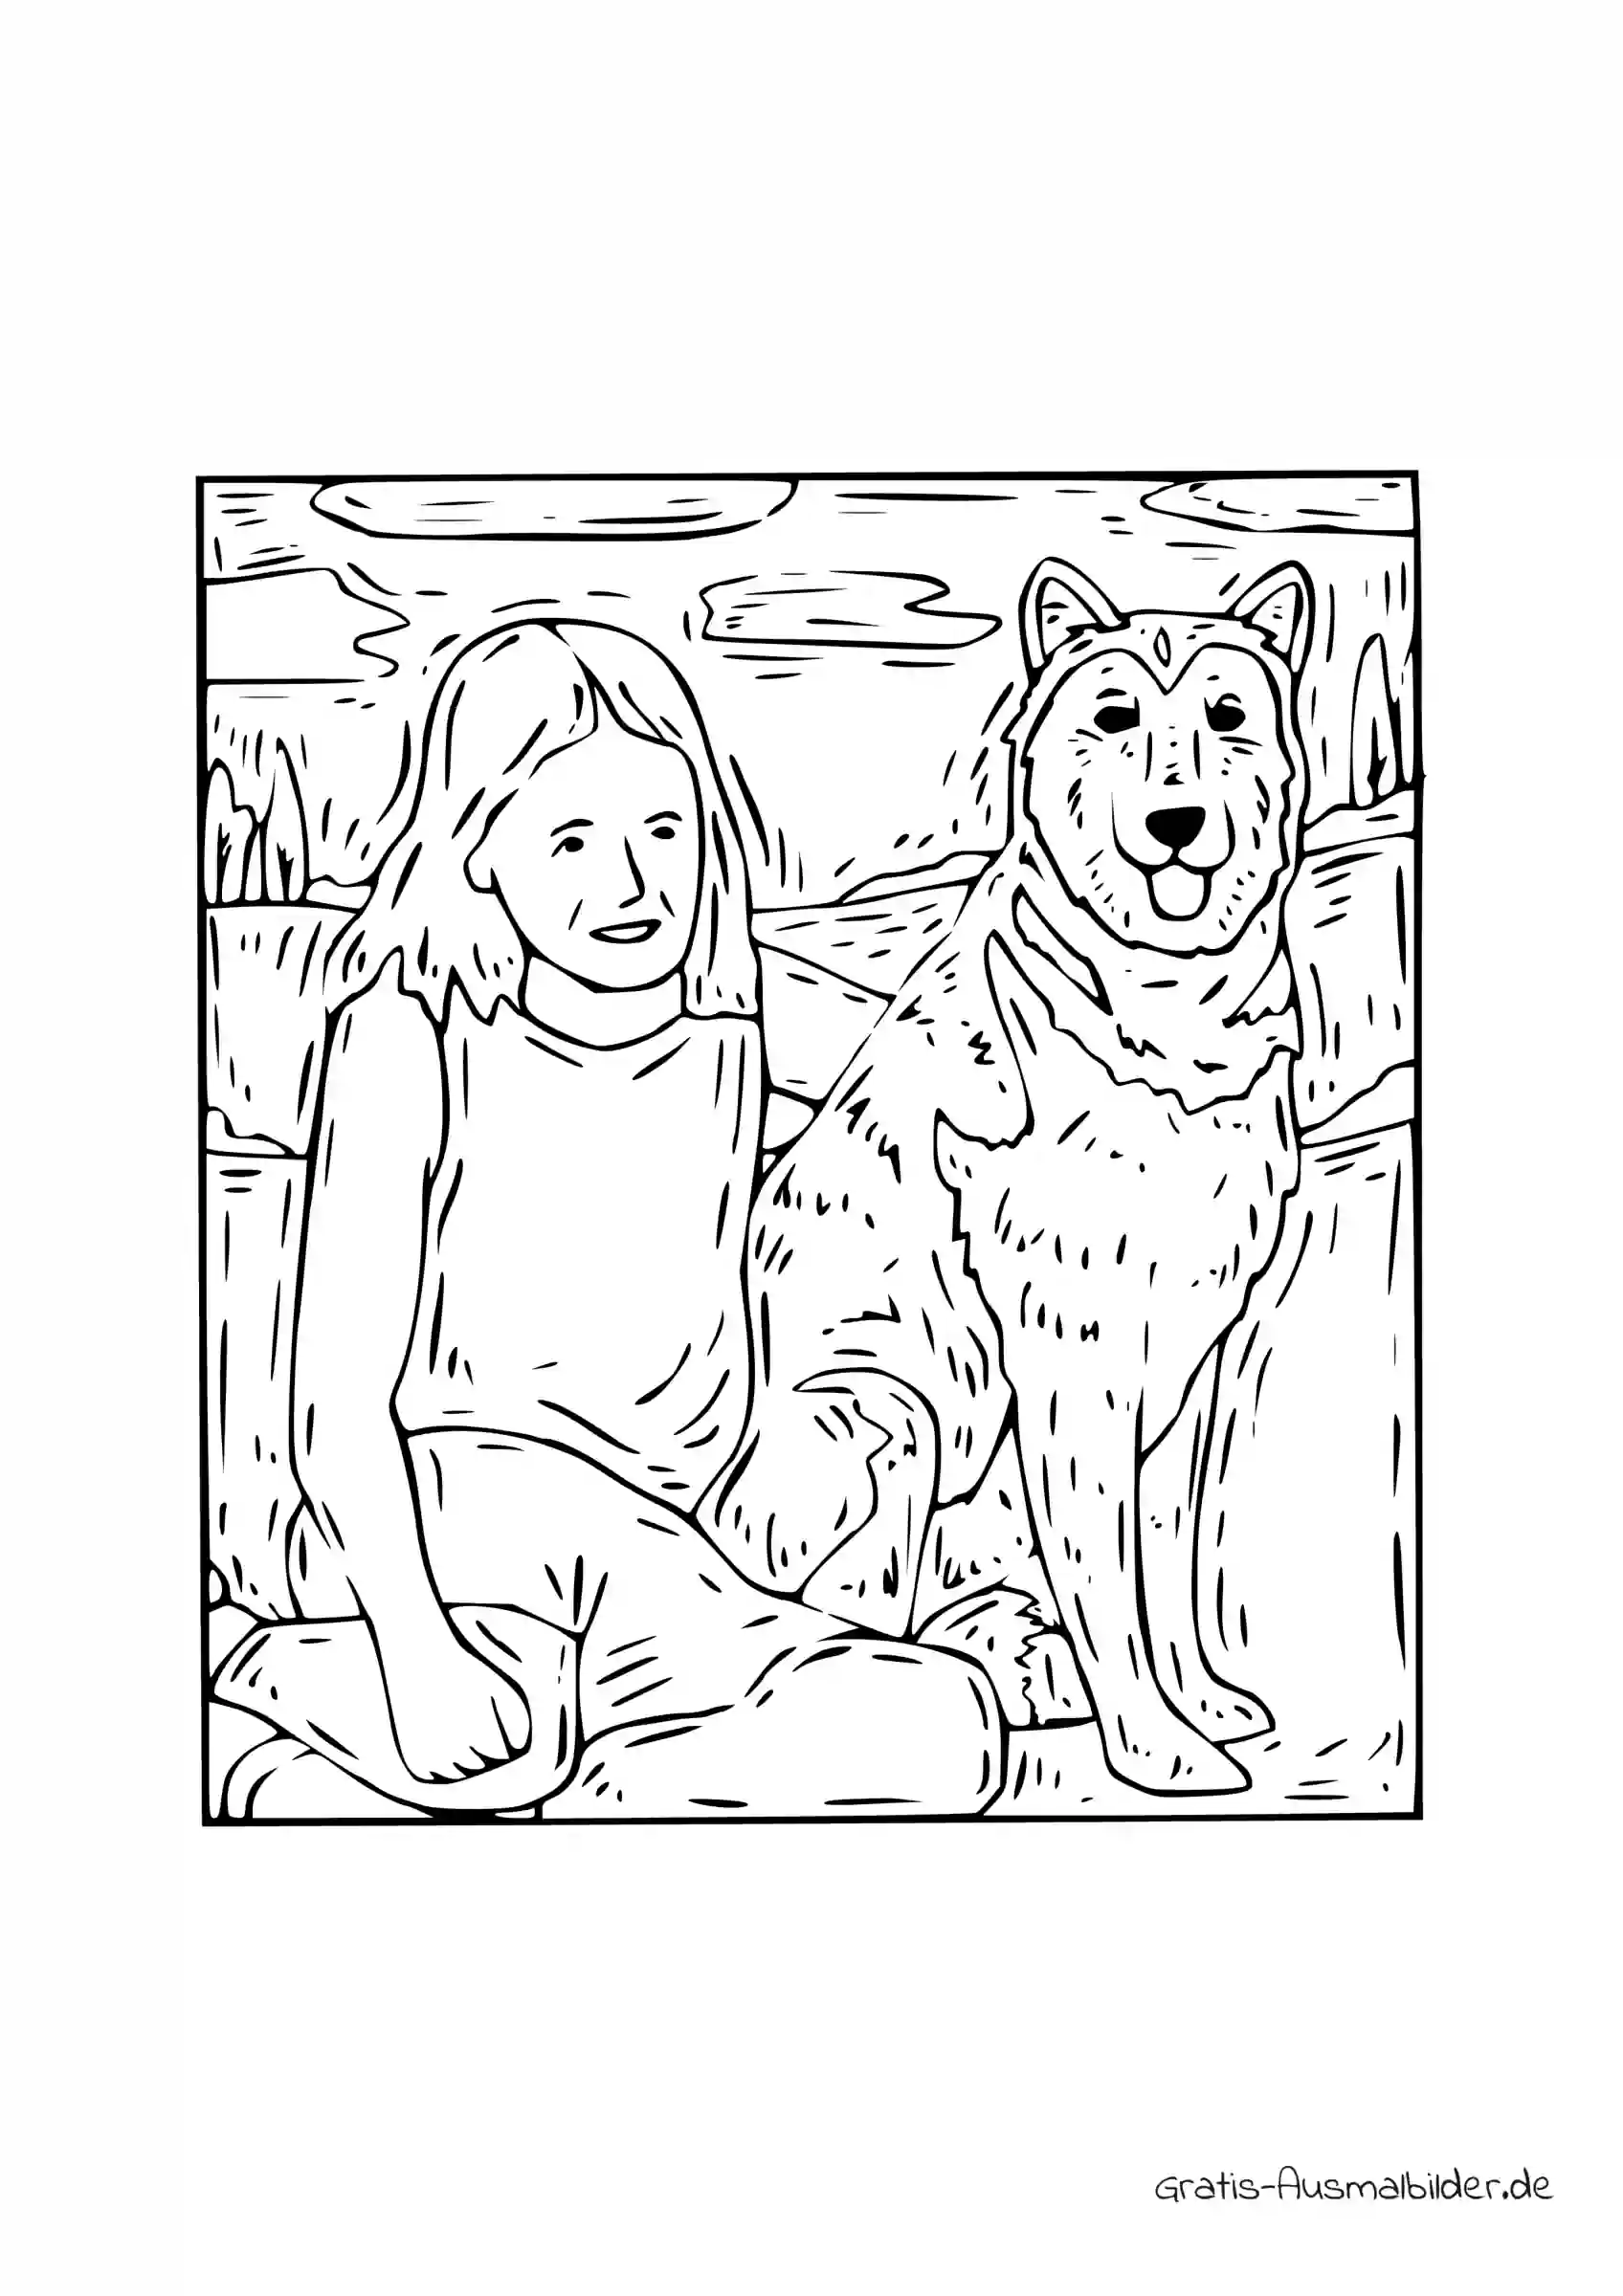 Ausmalbild Mädchen sitzt neben Hund